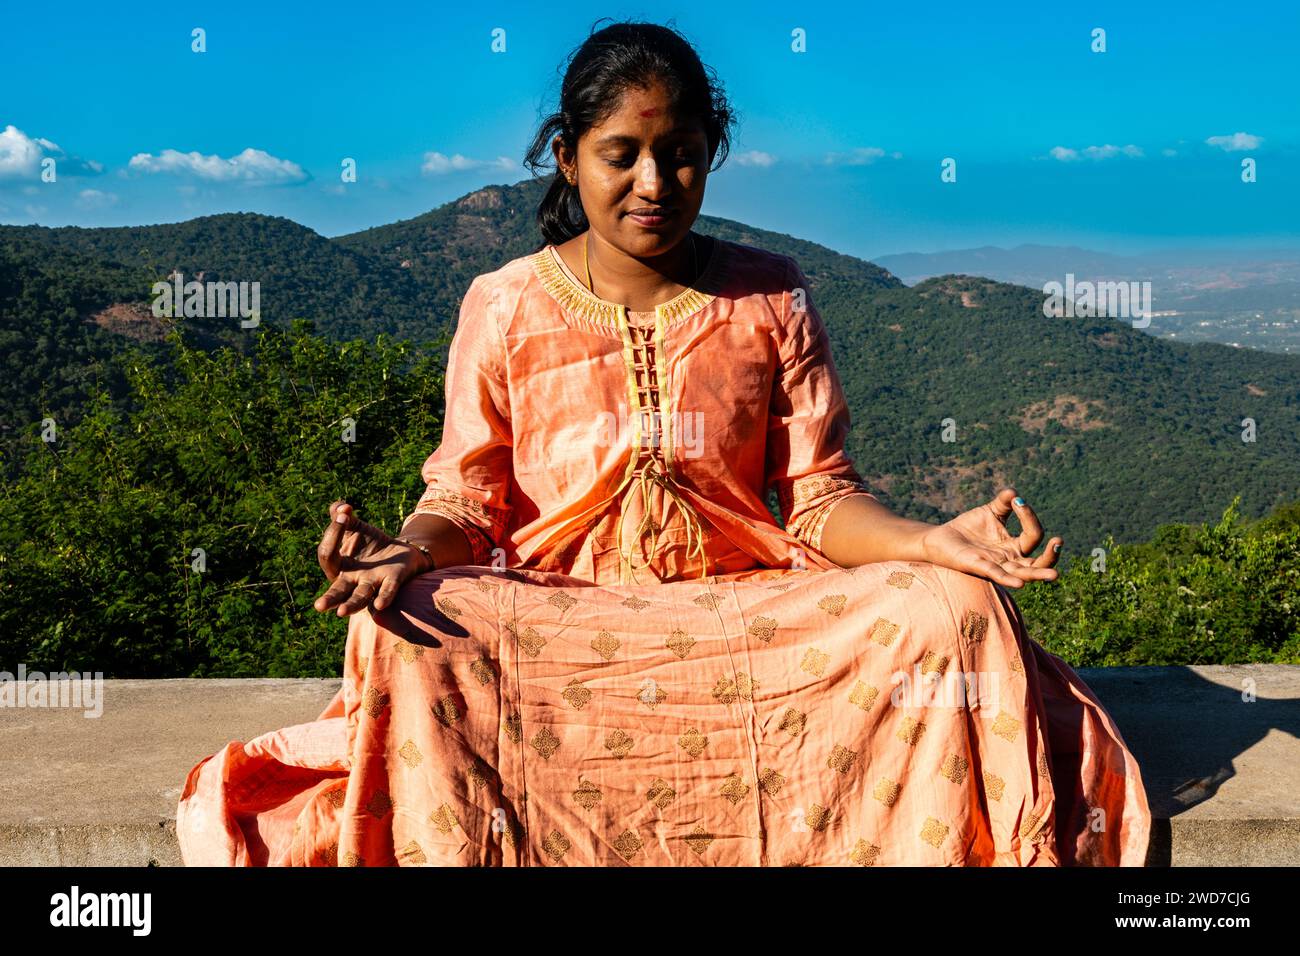 Eine Inderin in einem lebendigen Sari sucht Trost und spirituelle Verbindung durch Meditation inmitten der beeindruckenden Aussicht auf den Berg Stockfoto